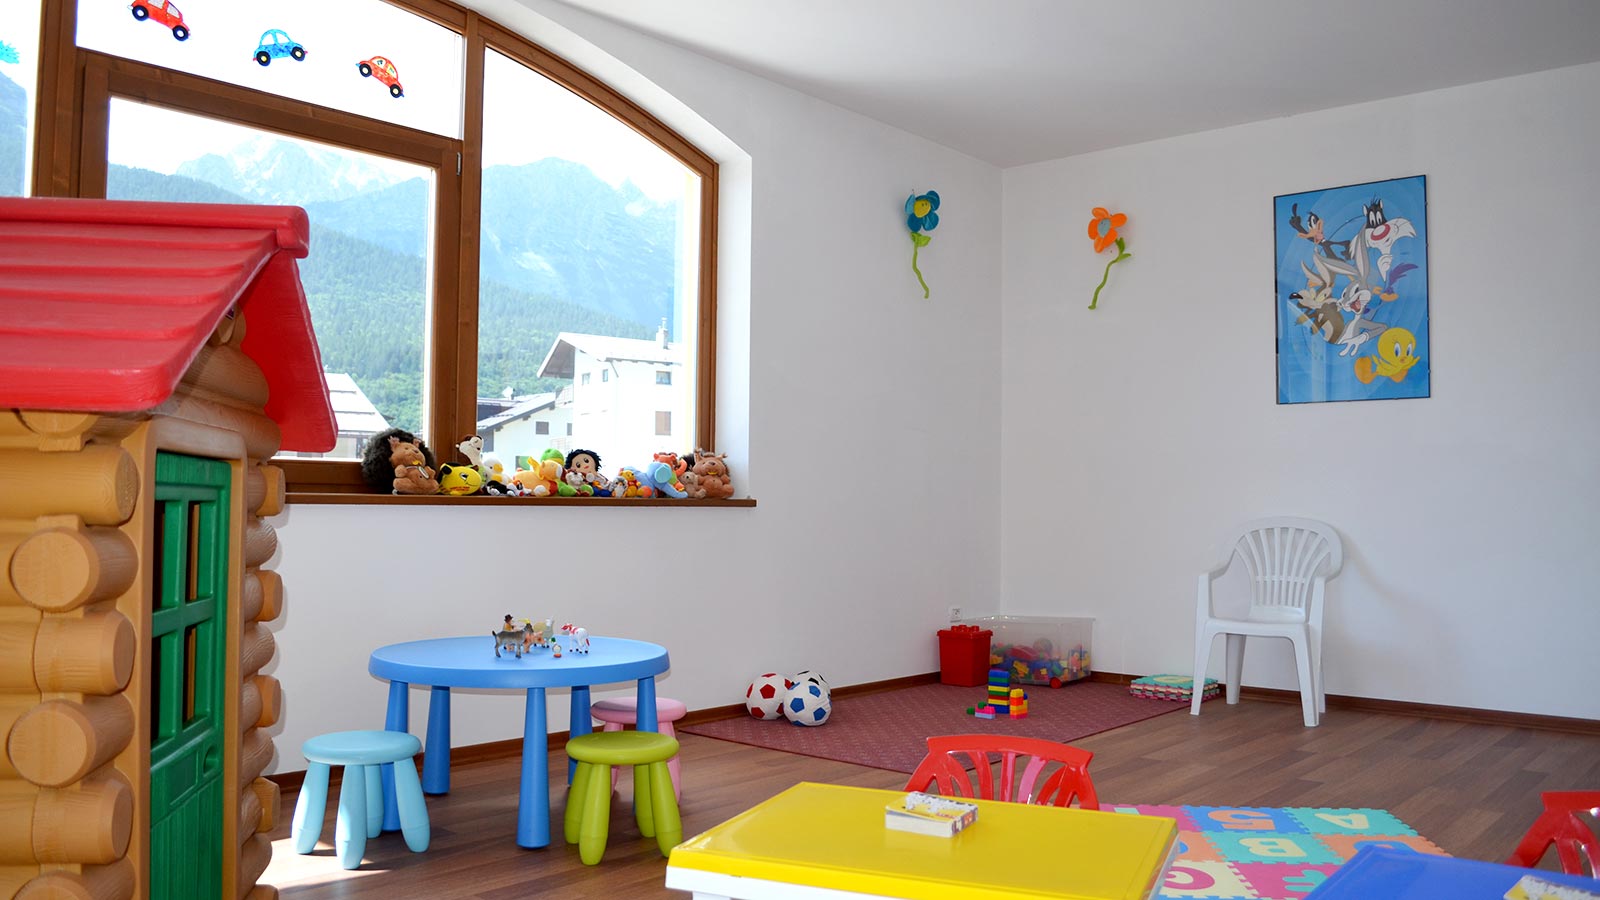 Dettaglio di una parte dell'area giochi per bambini nel Residence Antares ad Andalo